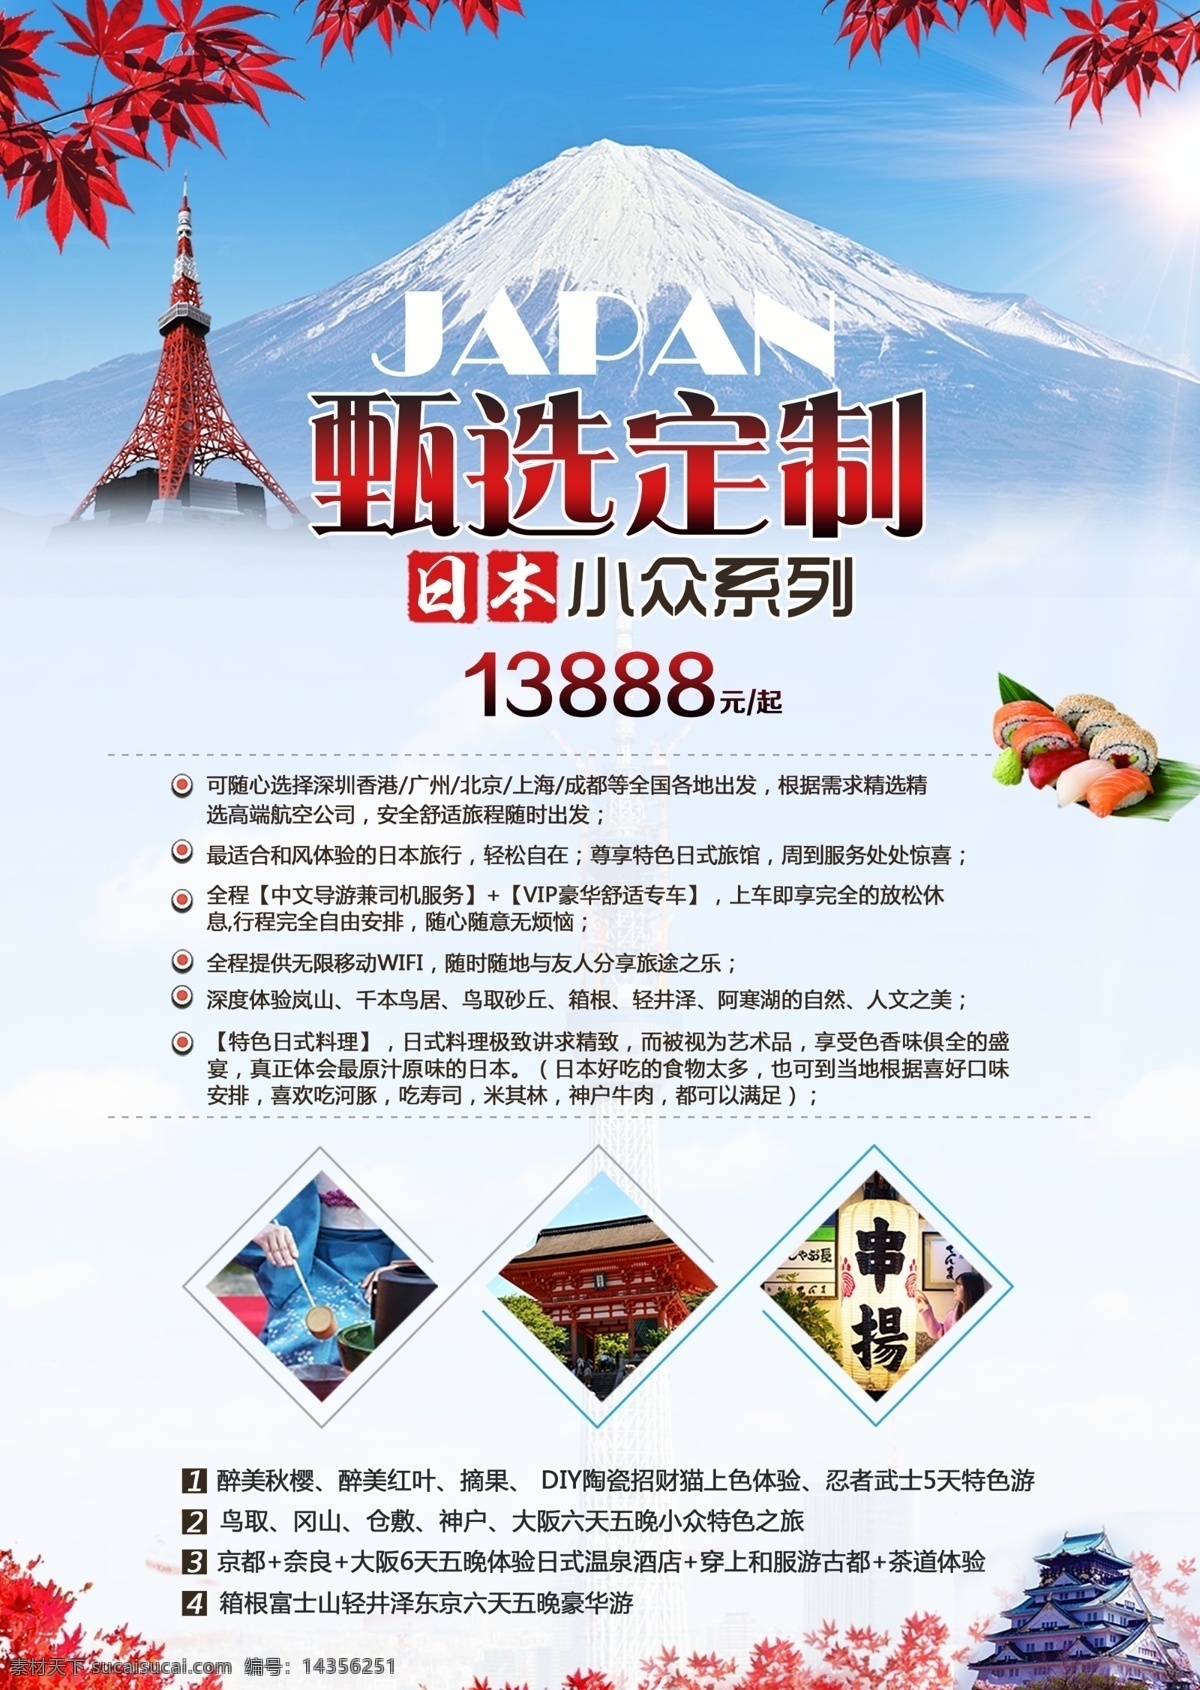 日本旅游海报 日本旅游 广告 富士山 旅游 淘宝设计 淘宝素材 日本 淘宝模板下载